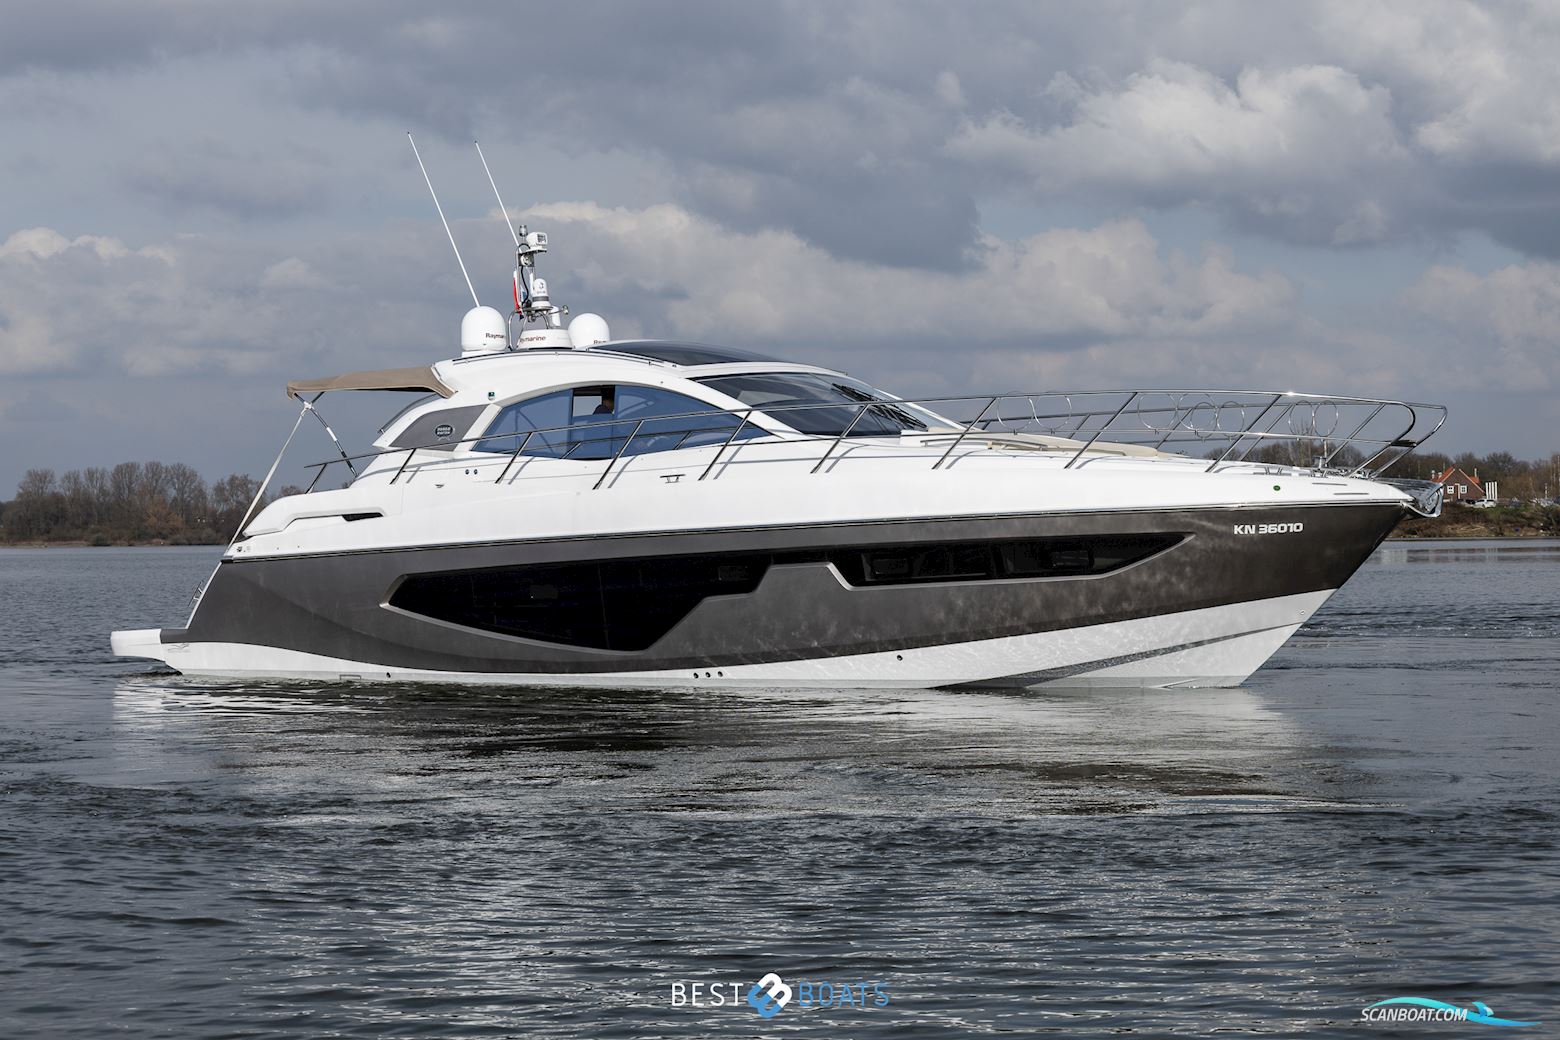 Sessa C44 Motorbåt 2020, med Volvo Penta motor, Holland